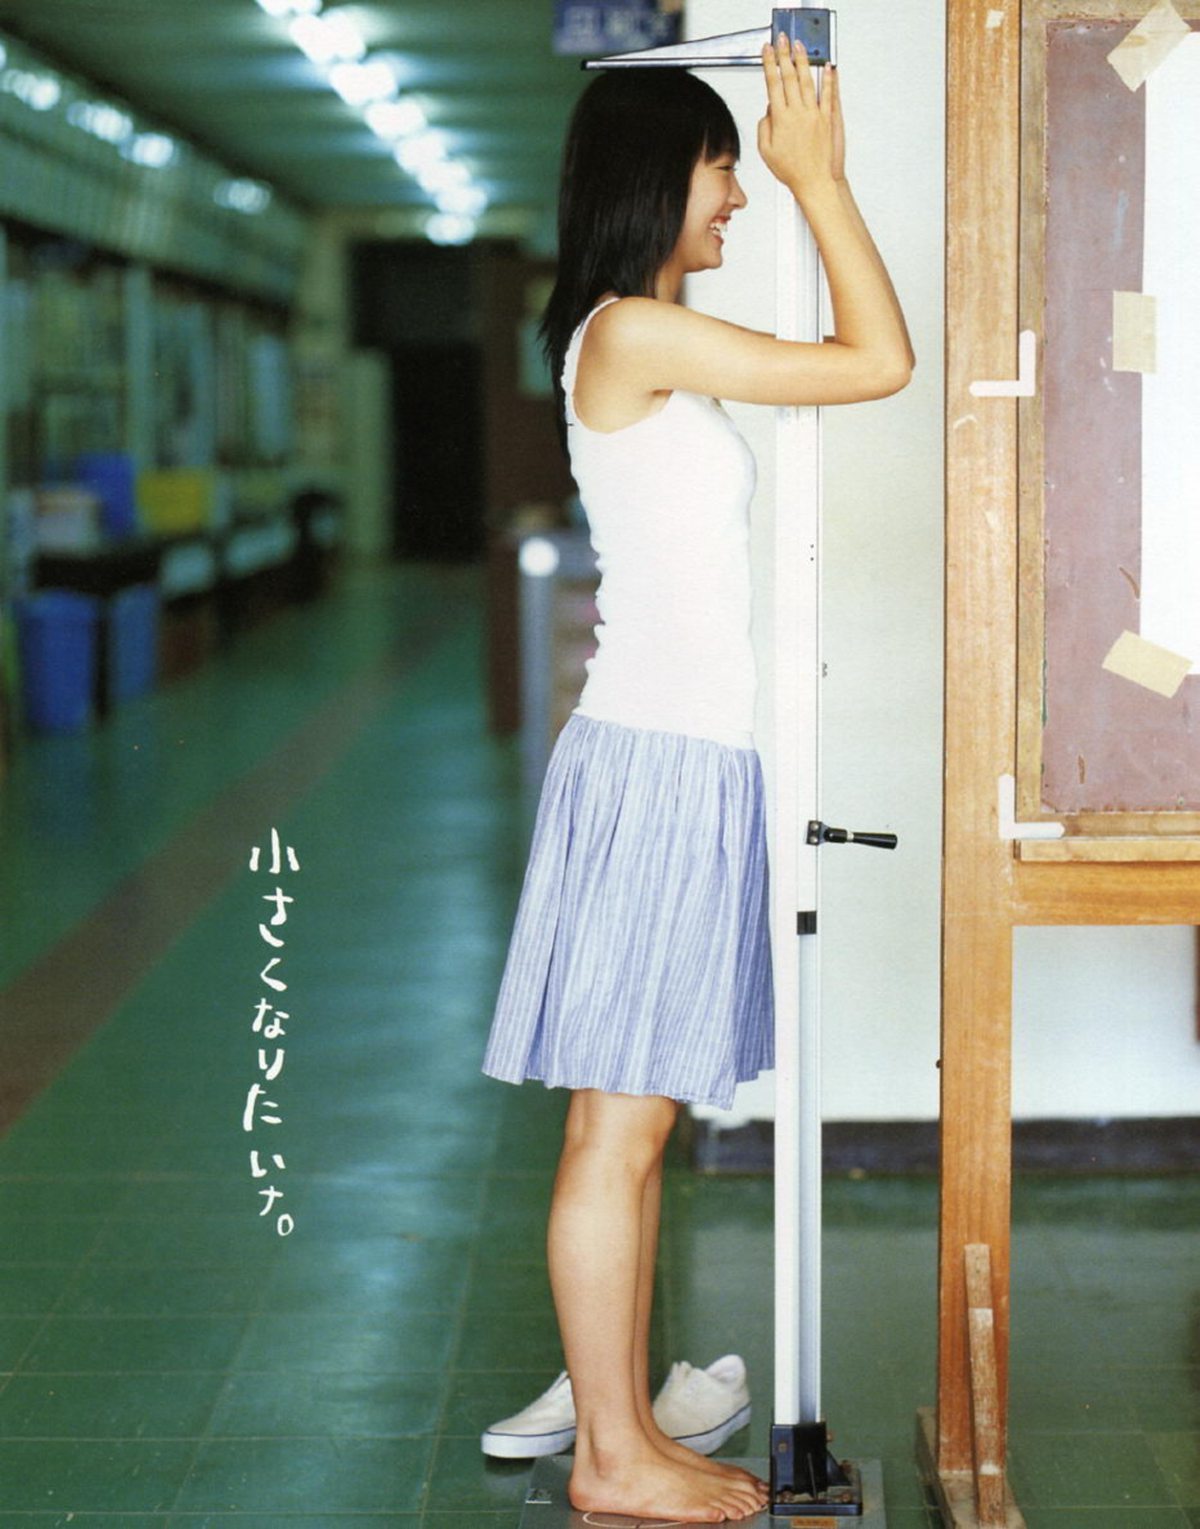 Photobook Yui Aragaki 新垣結衣 Chura Chura ちゅら ちゅら 2006 03 03 0077 2778321963.jpg